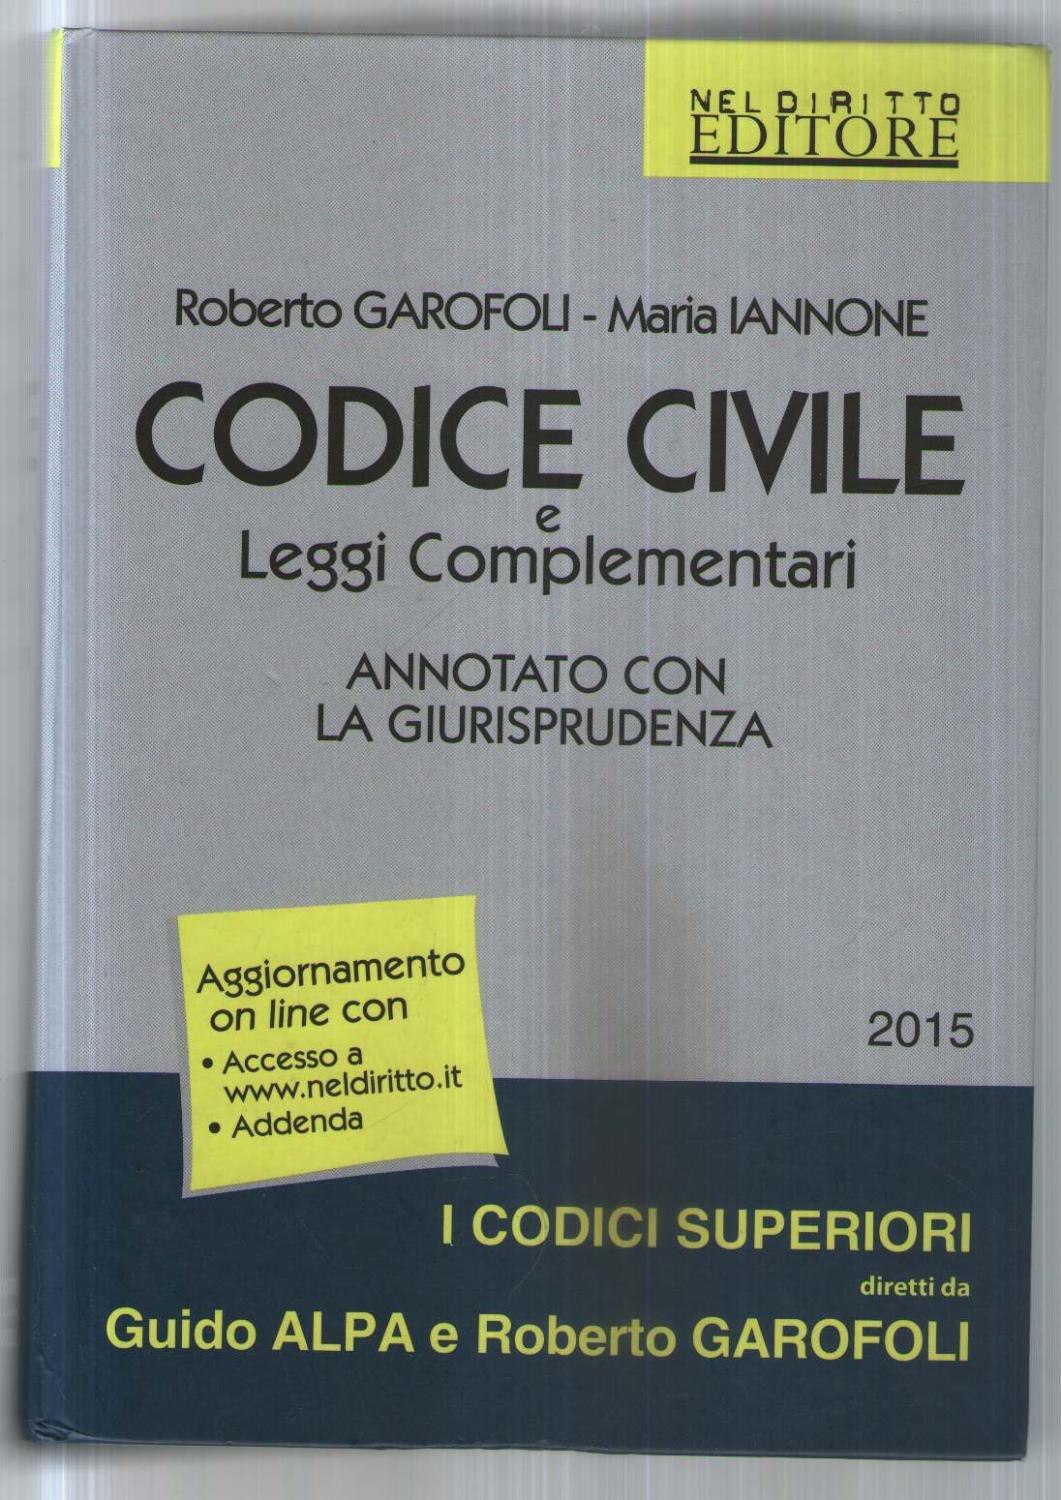 Codice civile e leggi complementari. Annotato con la giurisprudenza. Con aggiornamento online - Garofoli, Roberto - Iannone, Maria